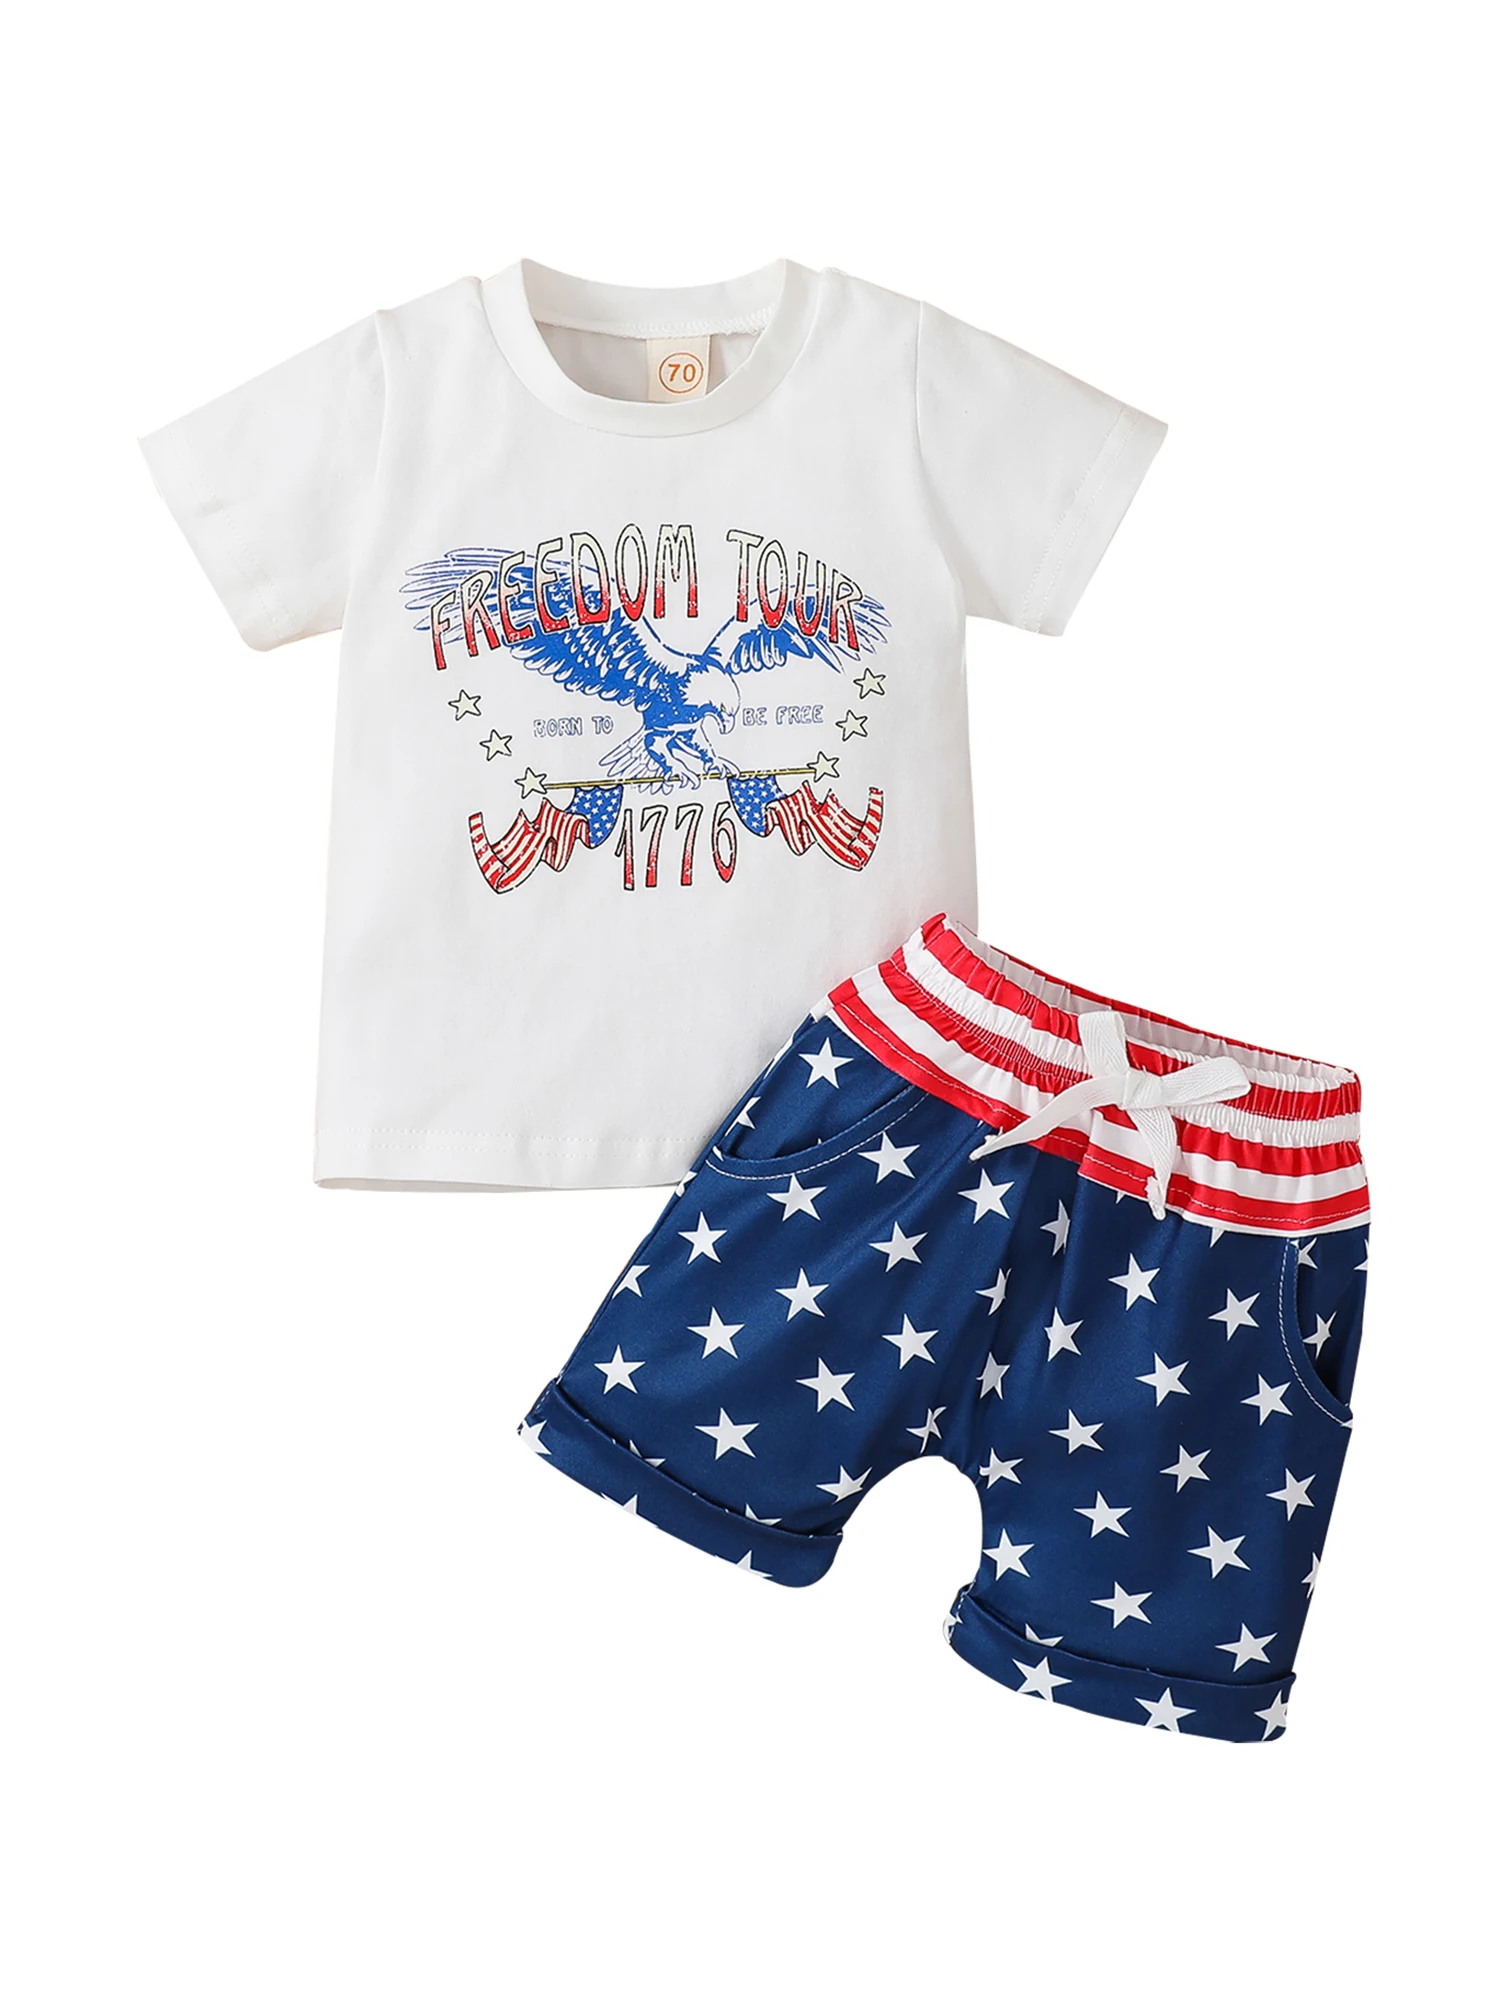 

Одежда для маленьких мальчиков 4 июля, летние наряды, Майки с надписью, футболки для мальчиков